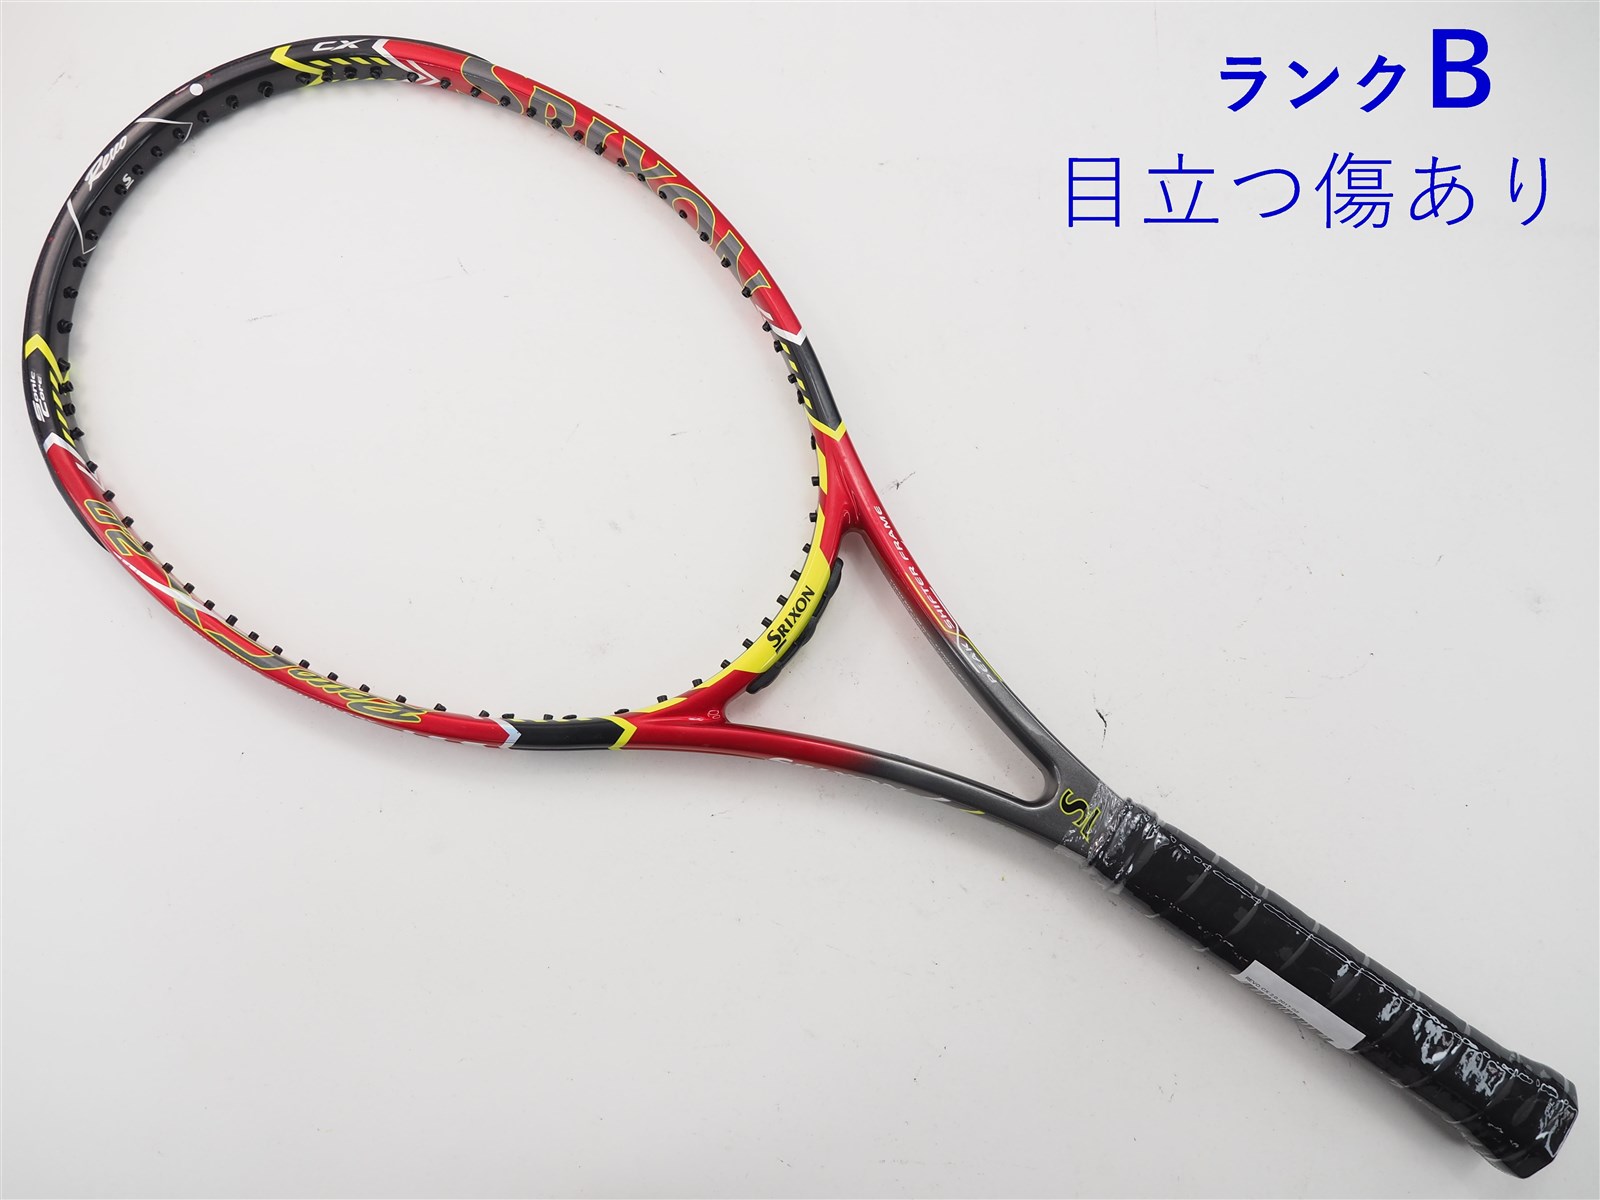 テニスラケット スリクソン レヴォ エックス 4.0 2013年モデル (G3